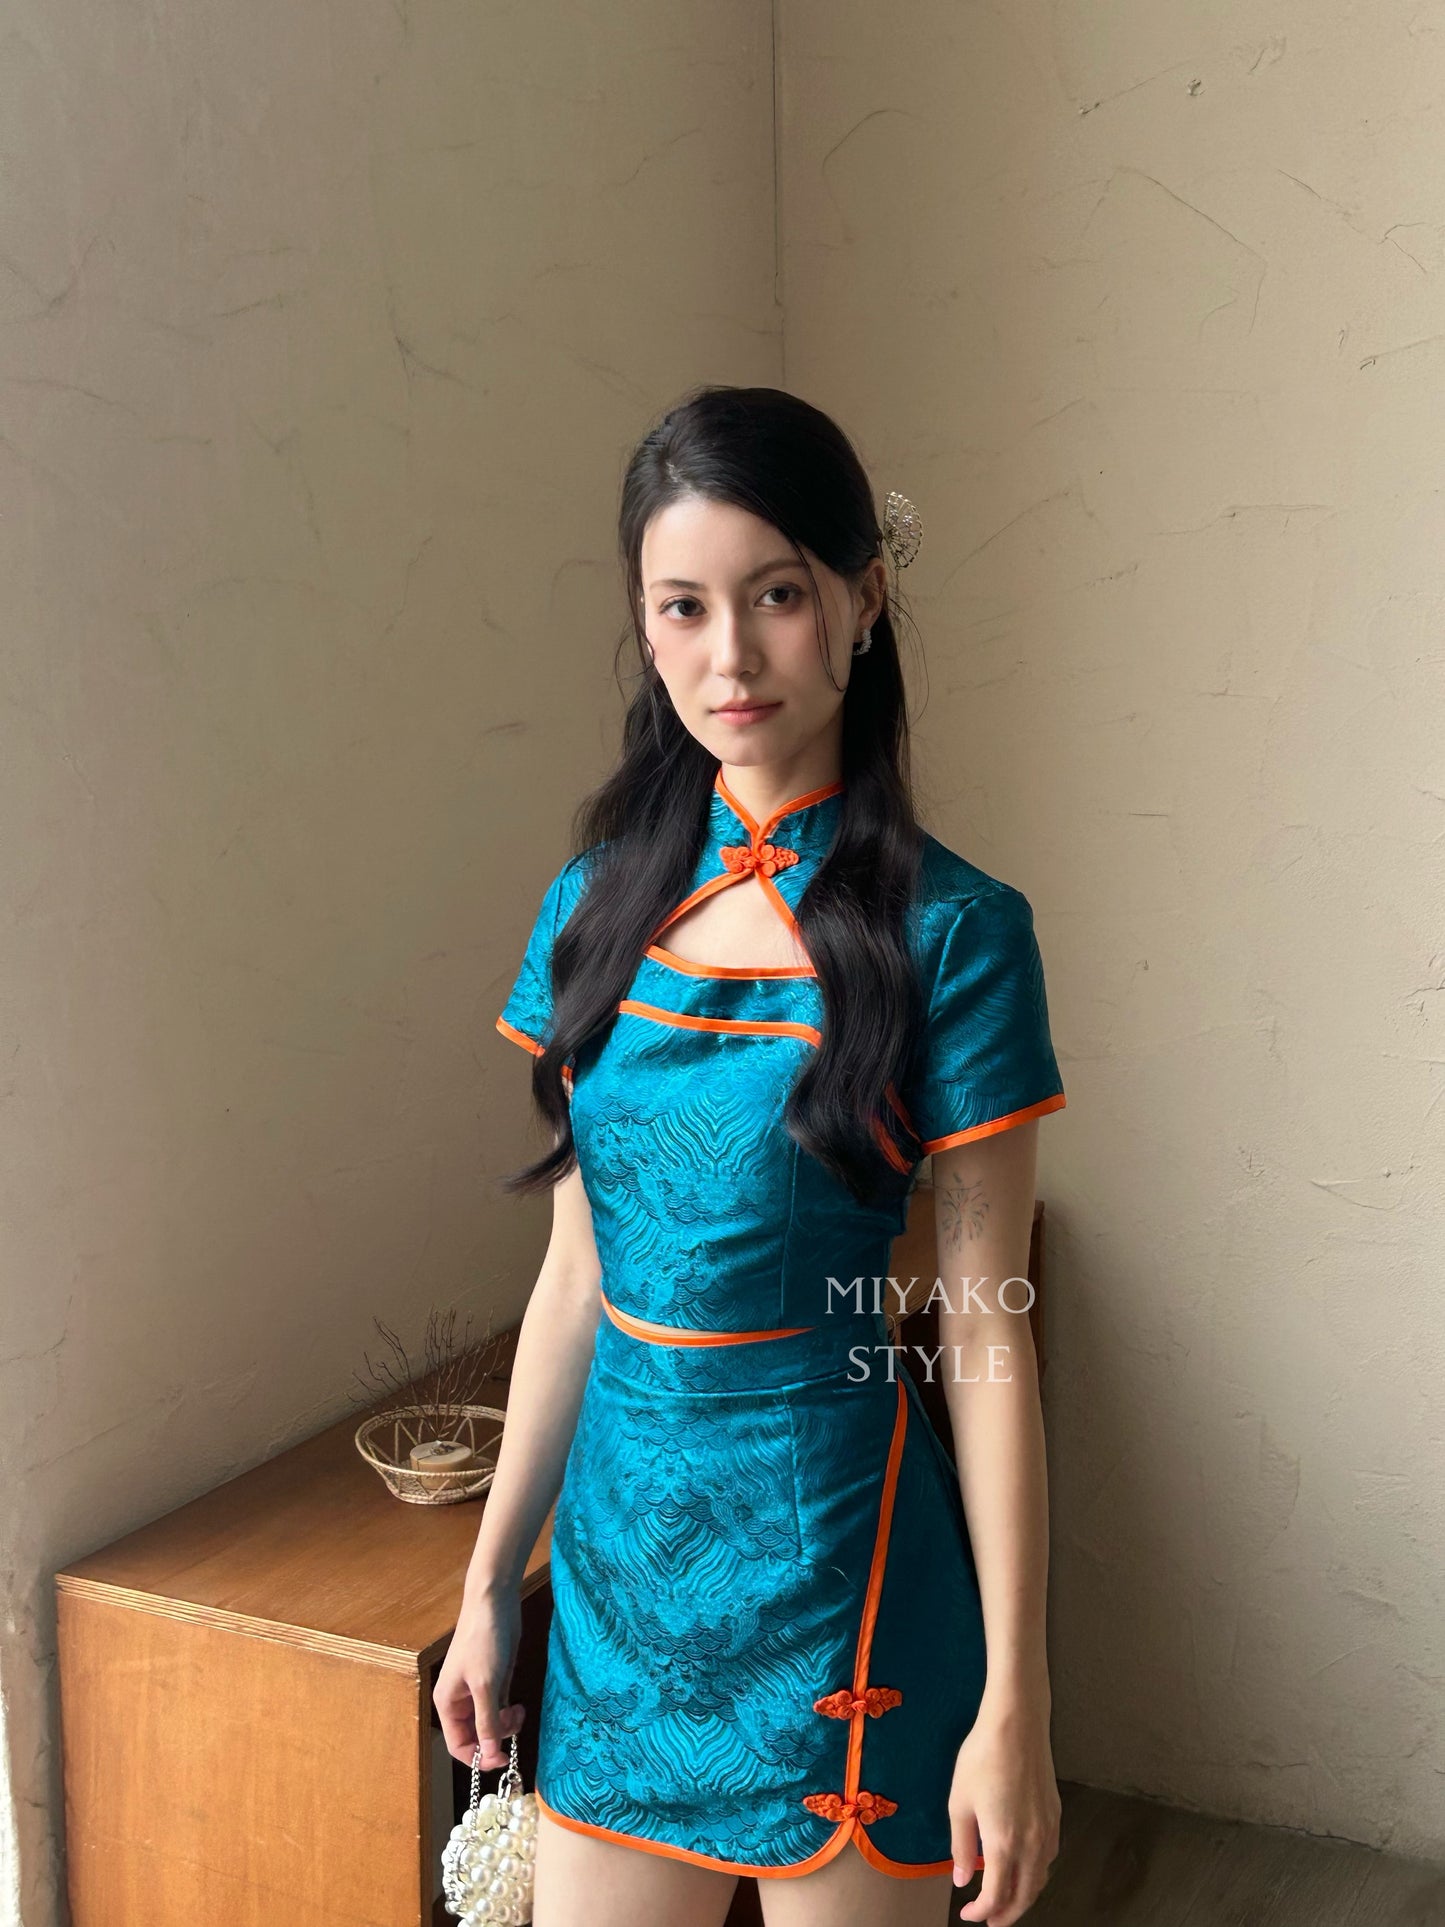 【龍華富貴】 Royal Cheongsam mini skirt in Peacock blue 孔雀蓝 (裙子only)